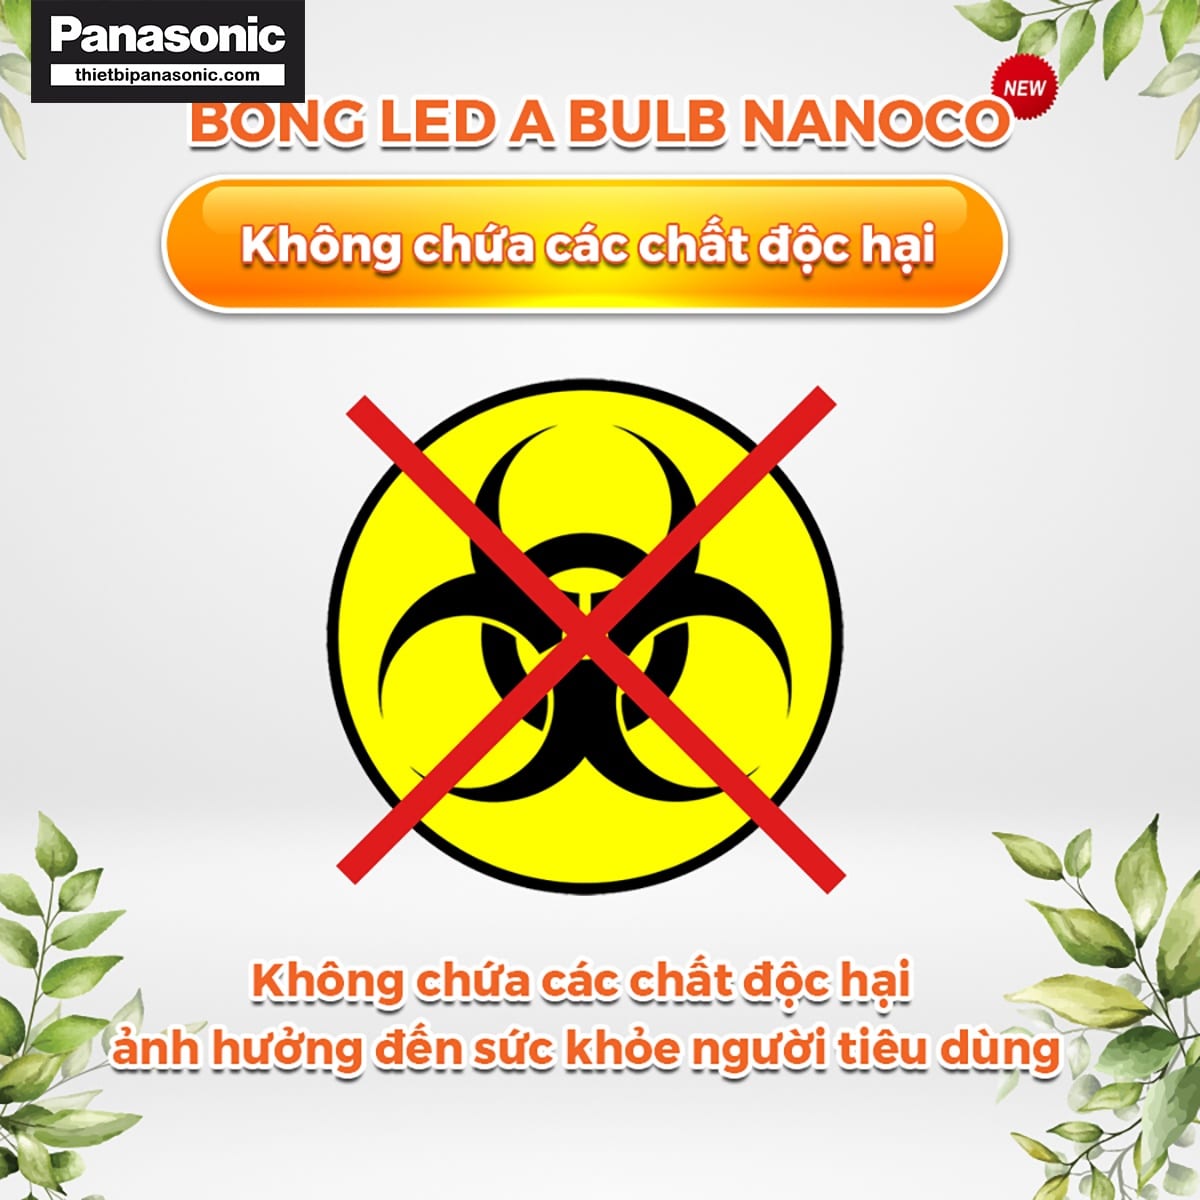 Bóng đèn bulb 40W Nanoco NLB406, NLB404, NLB403 không chứa các chất độc hại ảnh hưởng xấu tới sức khỏe